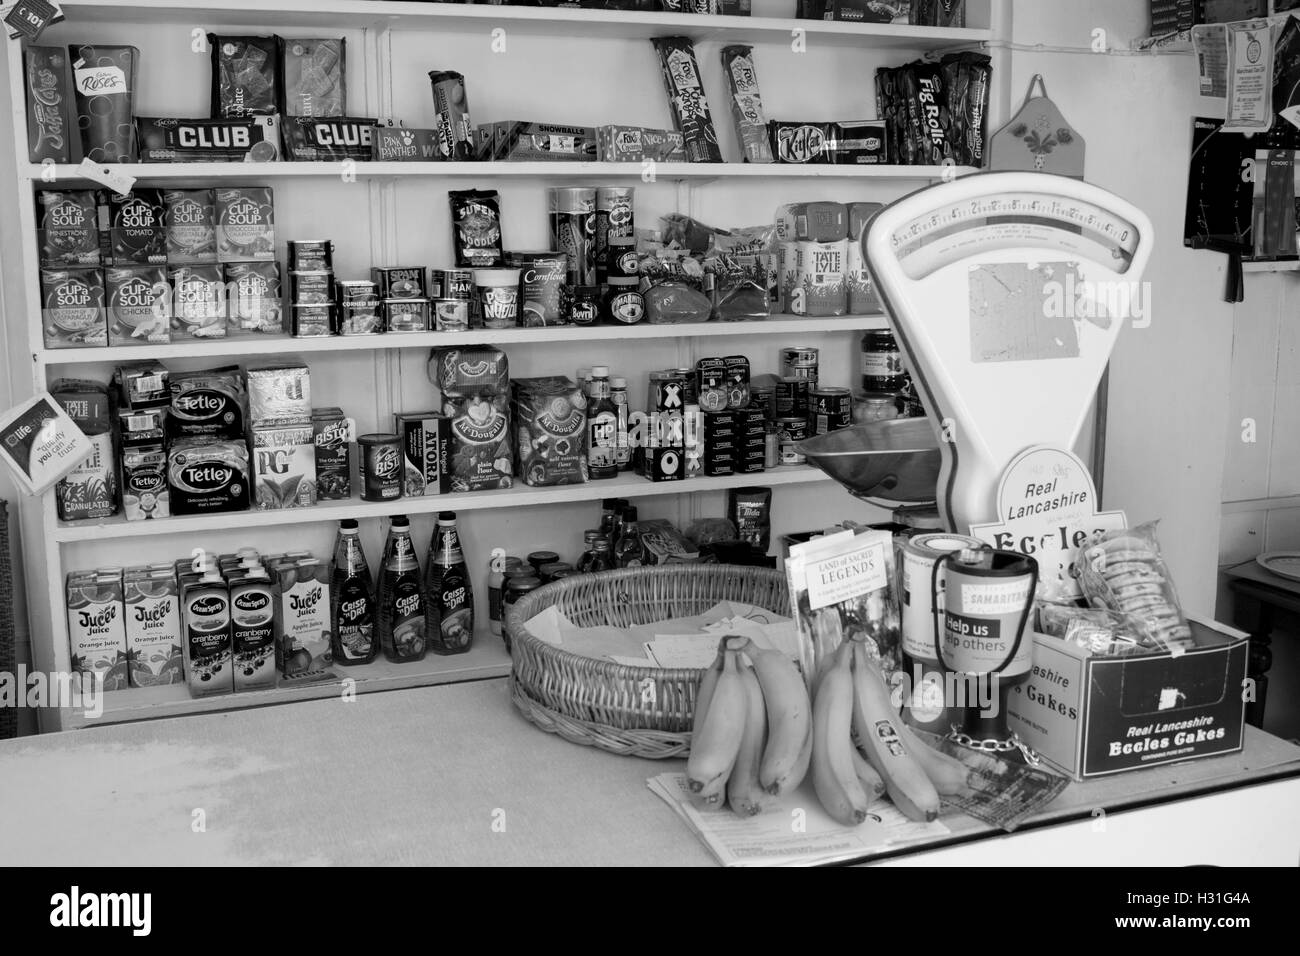 Interno dell'angolo tradizionale negozio con merce sugli scaffali, contatore e vecchie bilance di pesatura Llangian Gwynedd Wales UK Foto Stock